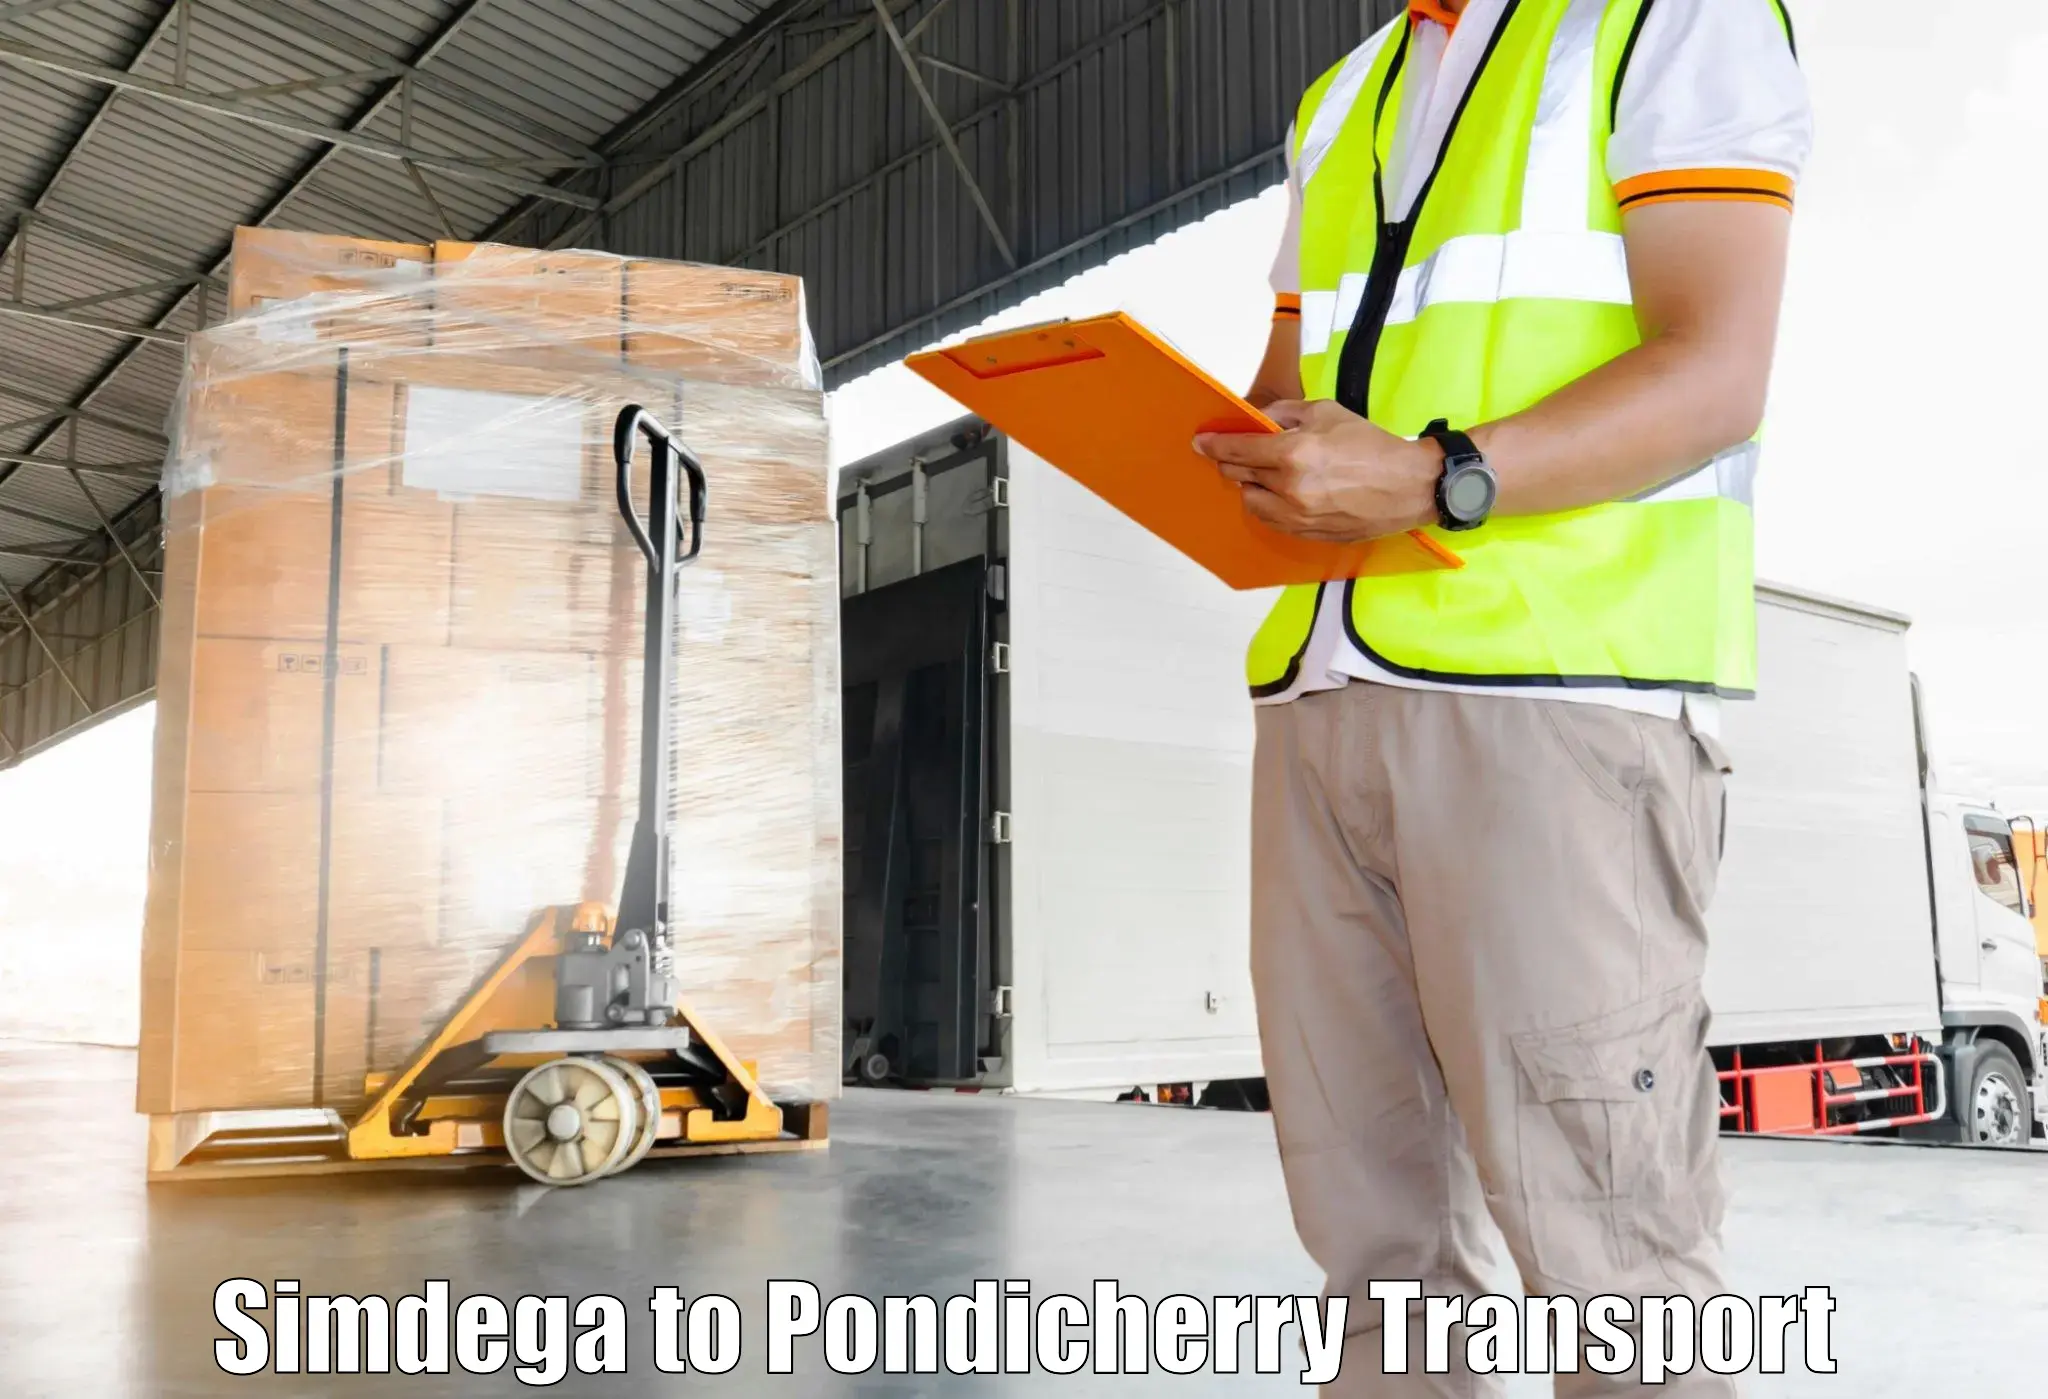 Two wheeler parcel service Simdega to Pondicherry